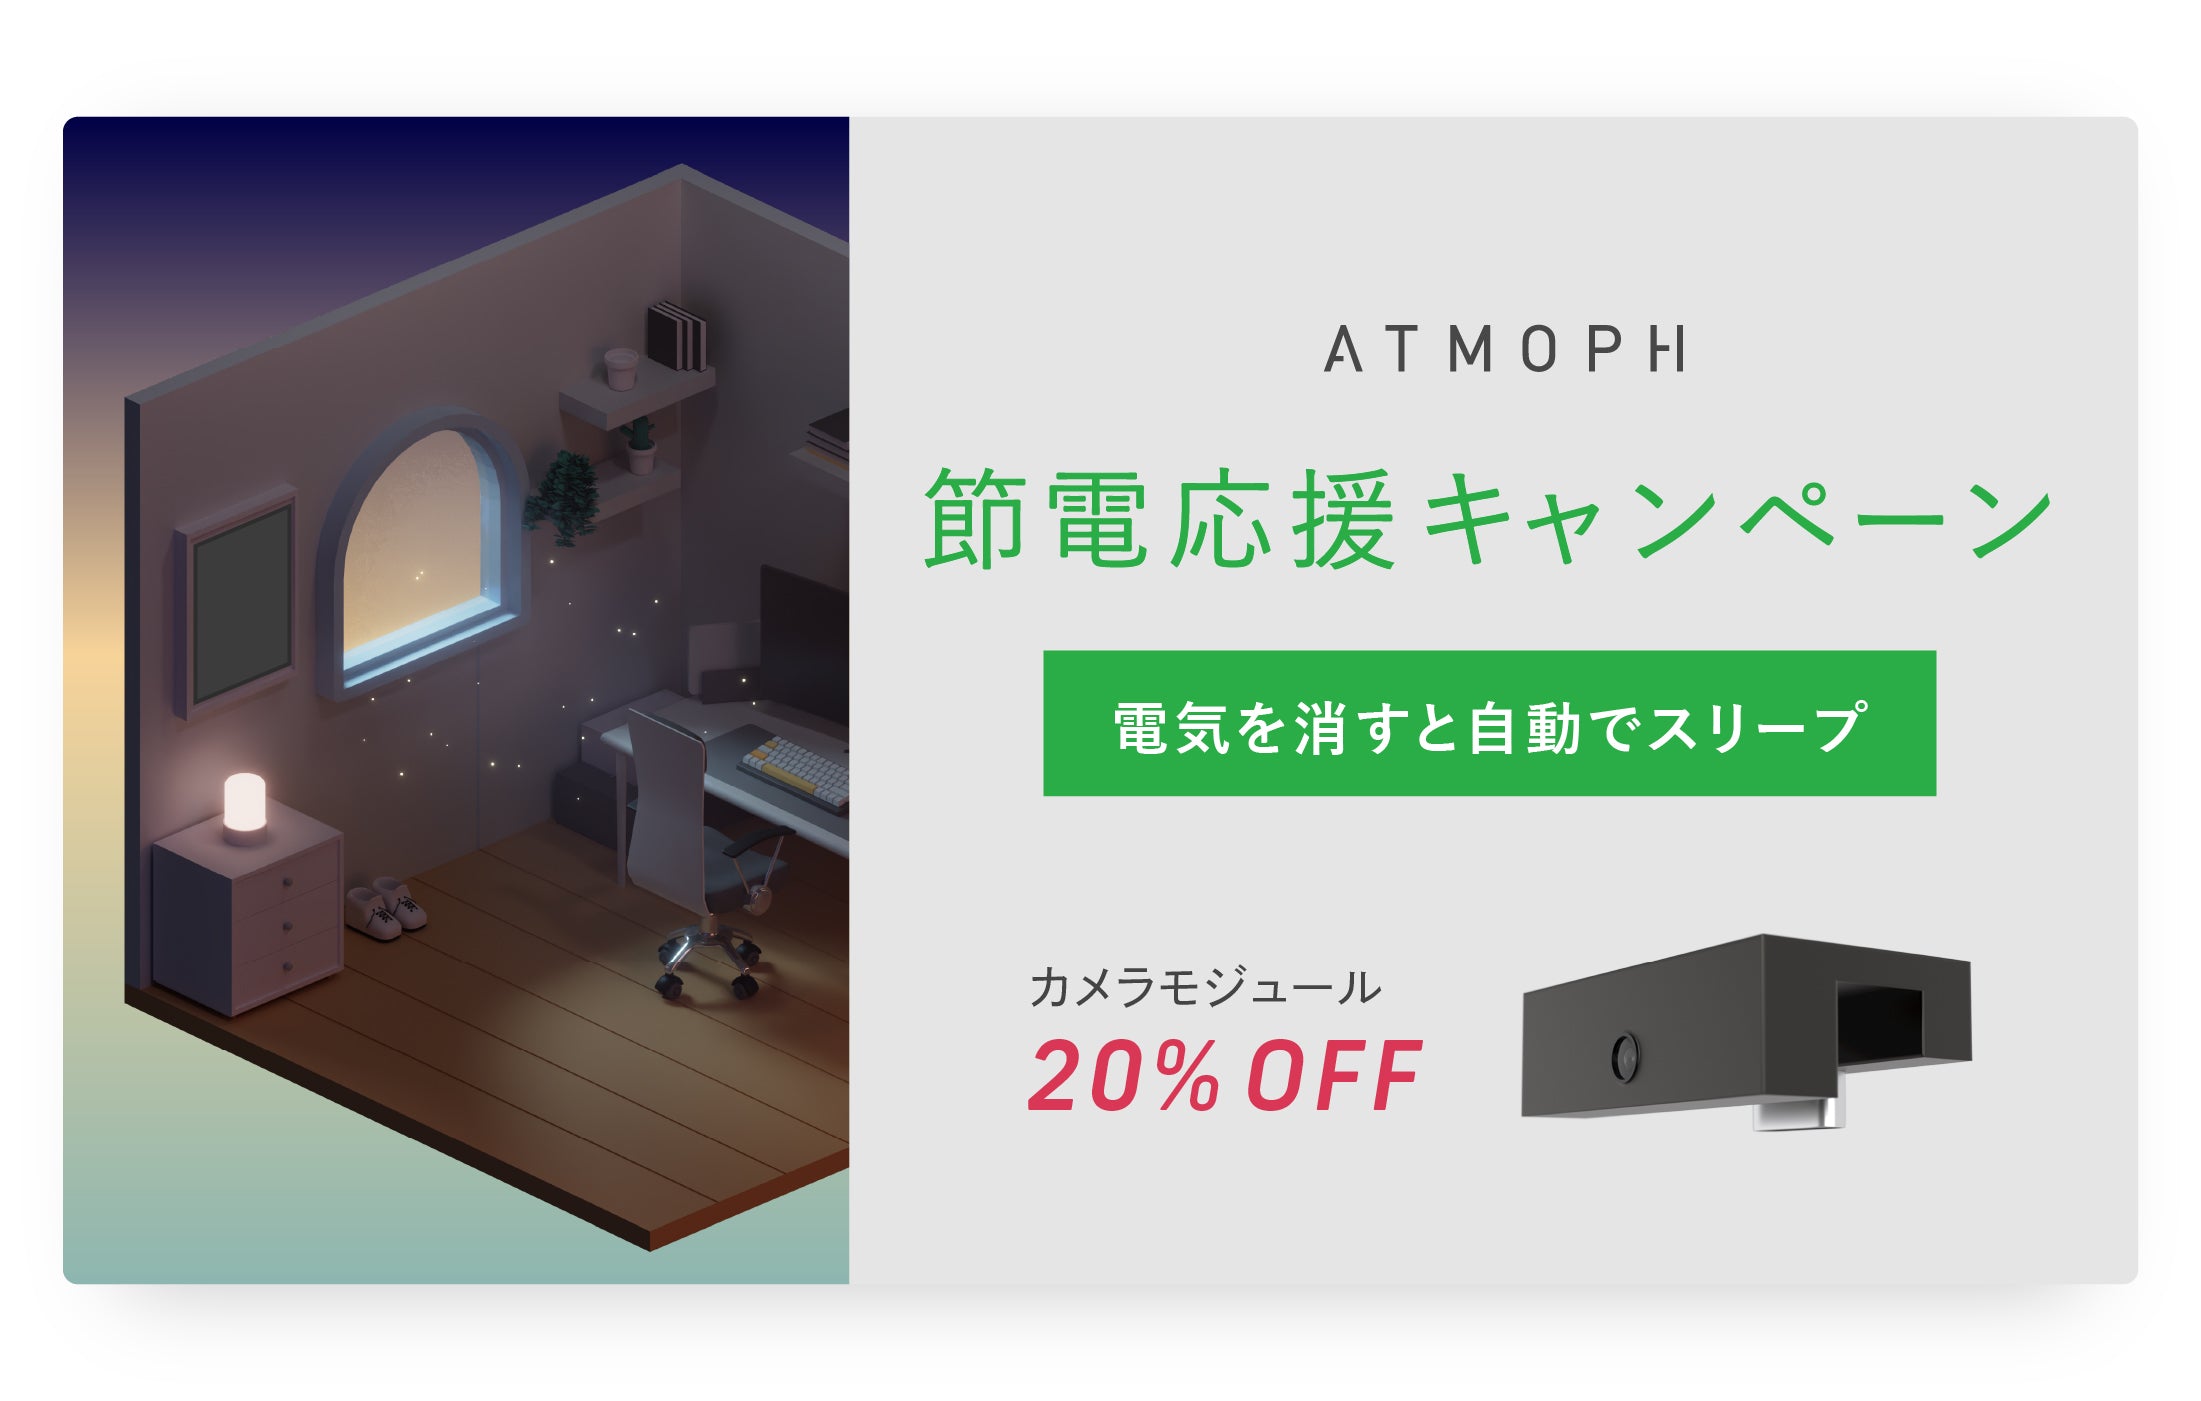 期間中、カメラモジュールが20%OFF。「Atmoph節電応援キャンペーン2022」を開始します！ – Atmoph Store